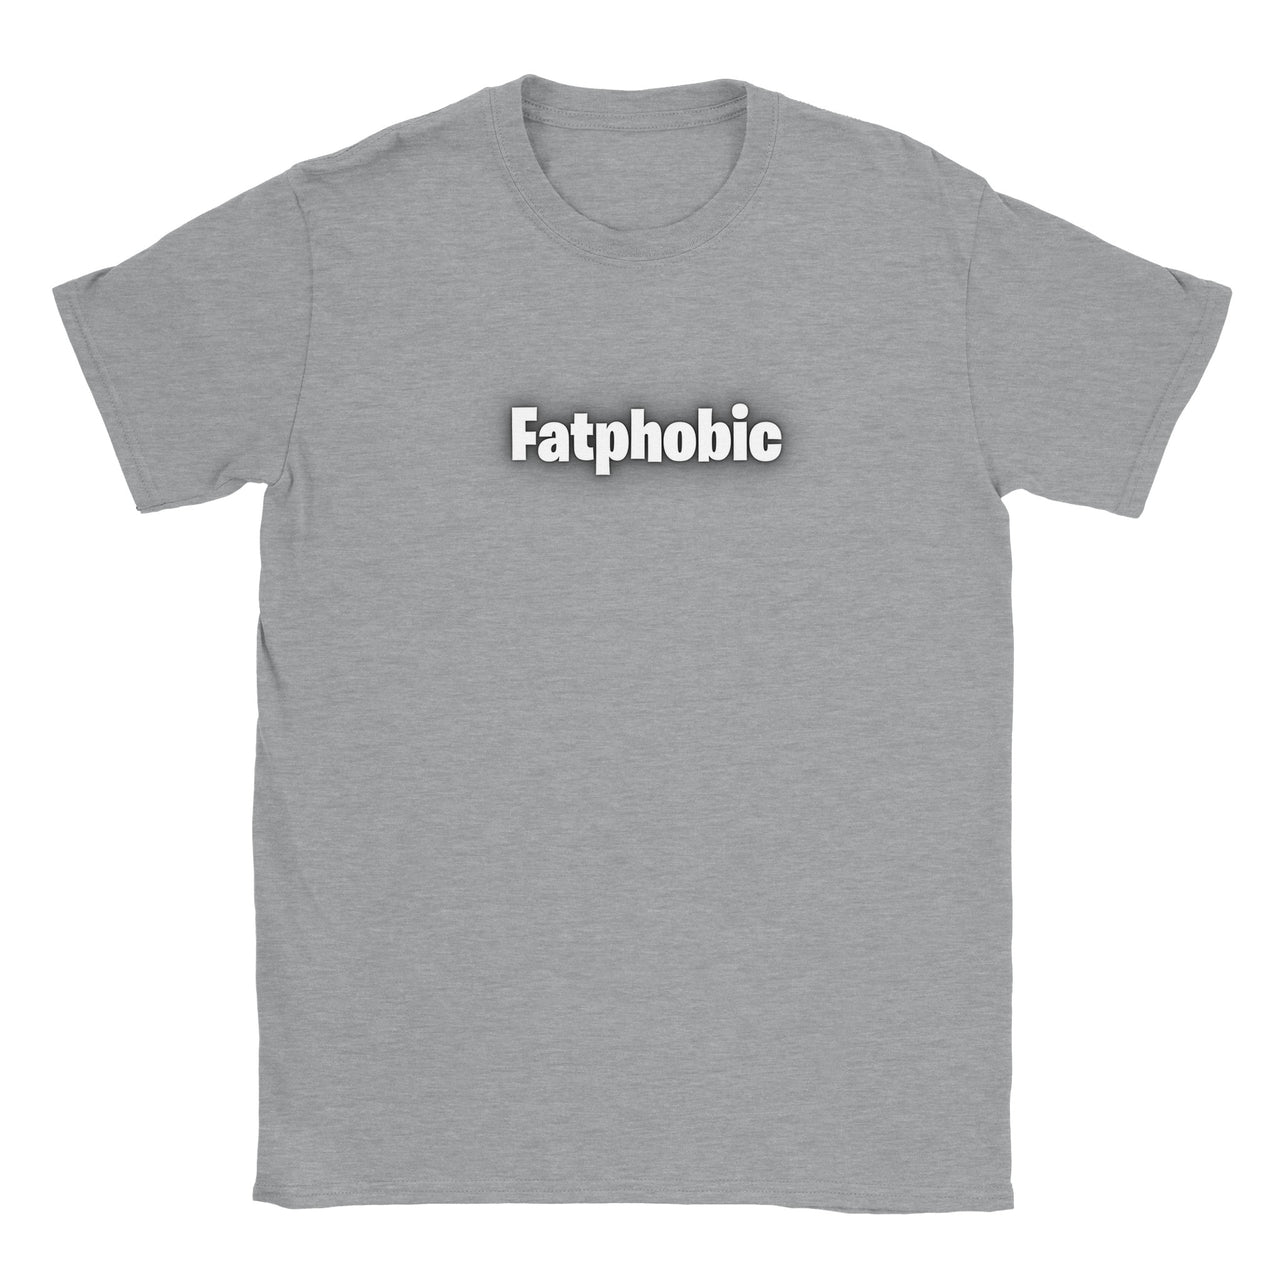 Fatphobic T-shirt